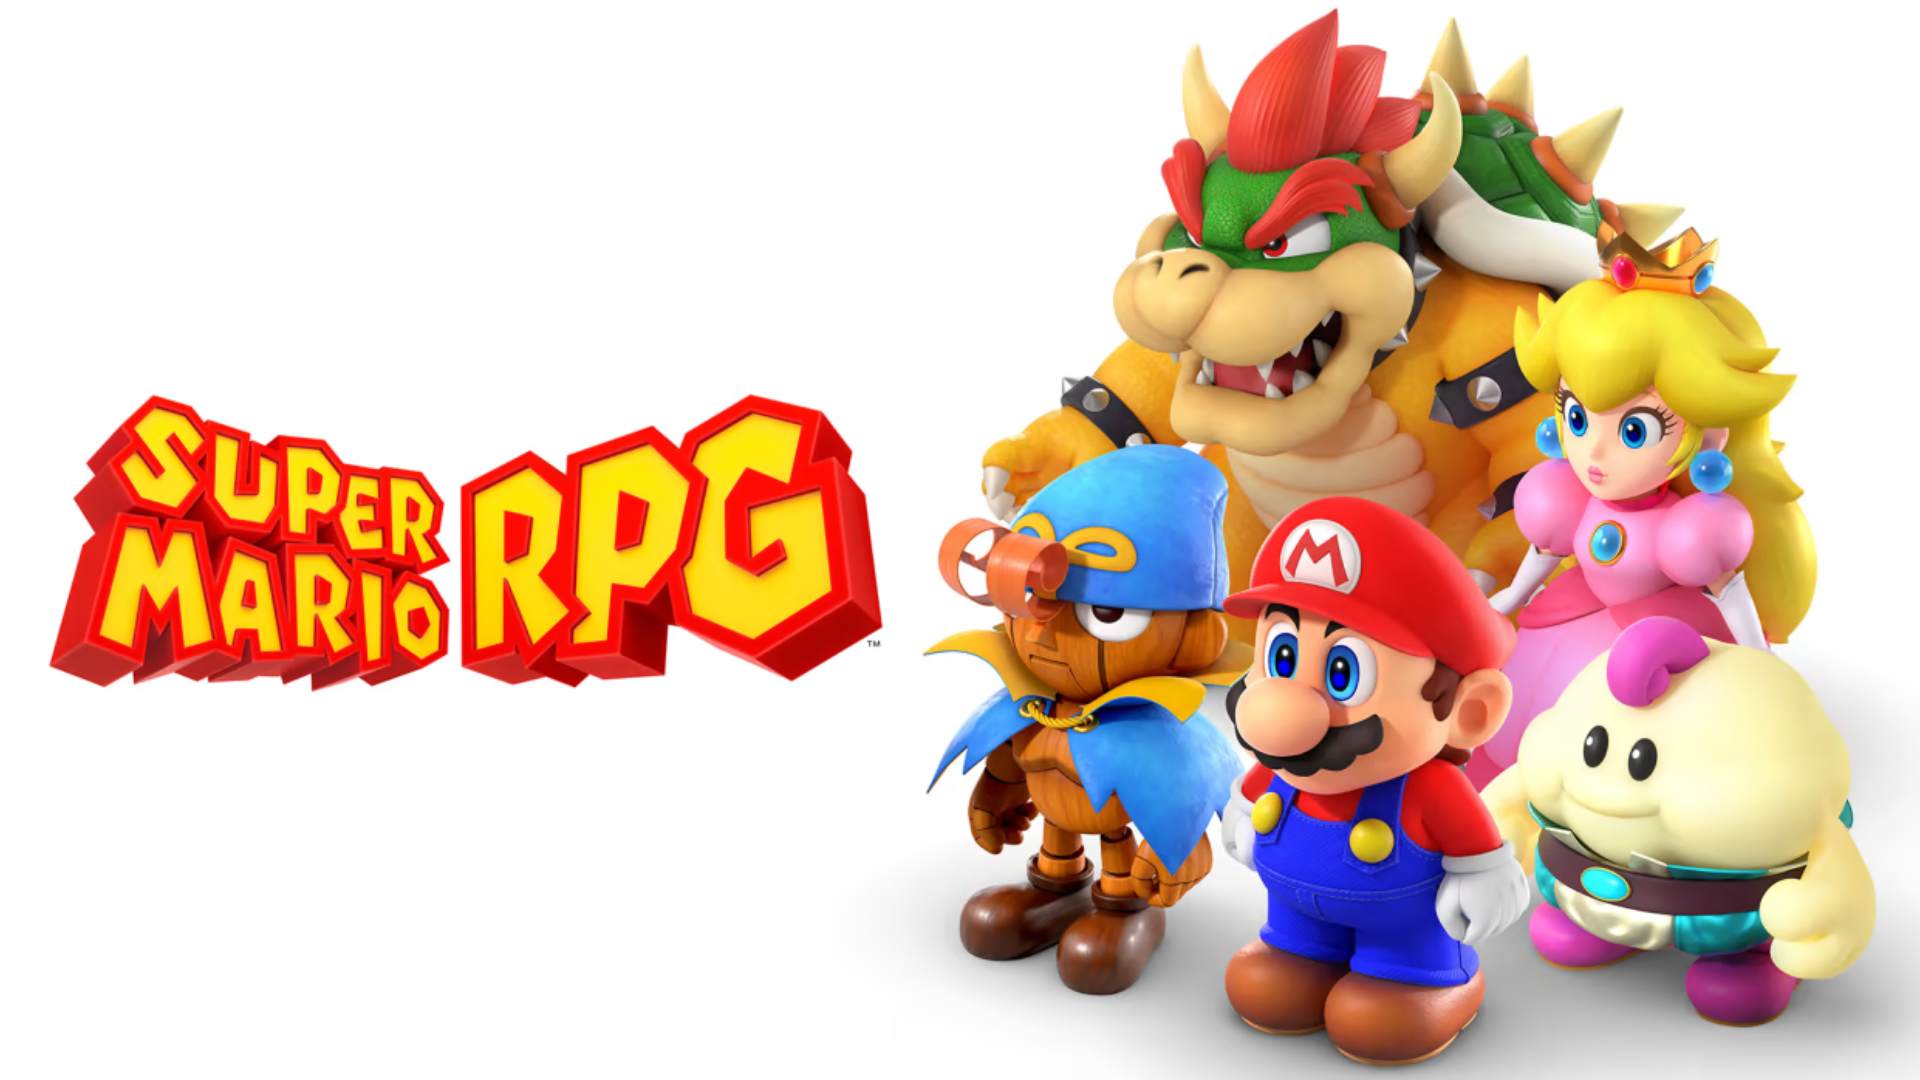 نسخه ریمیک بازی Super Mario RPG معرفی شد